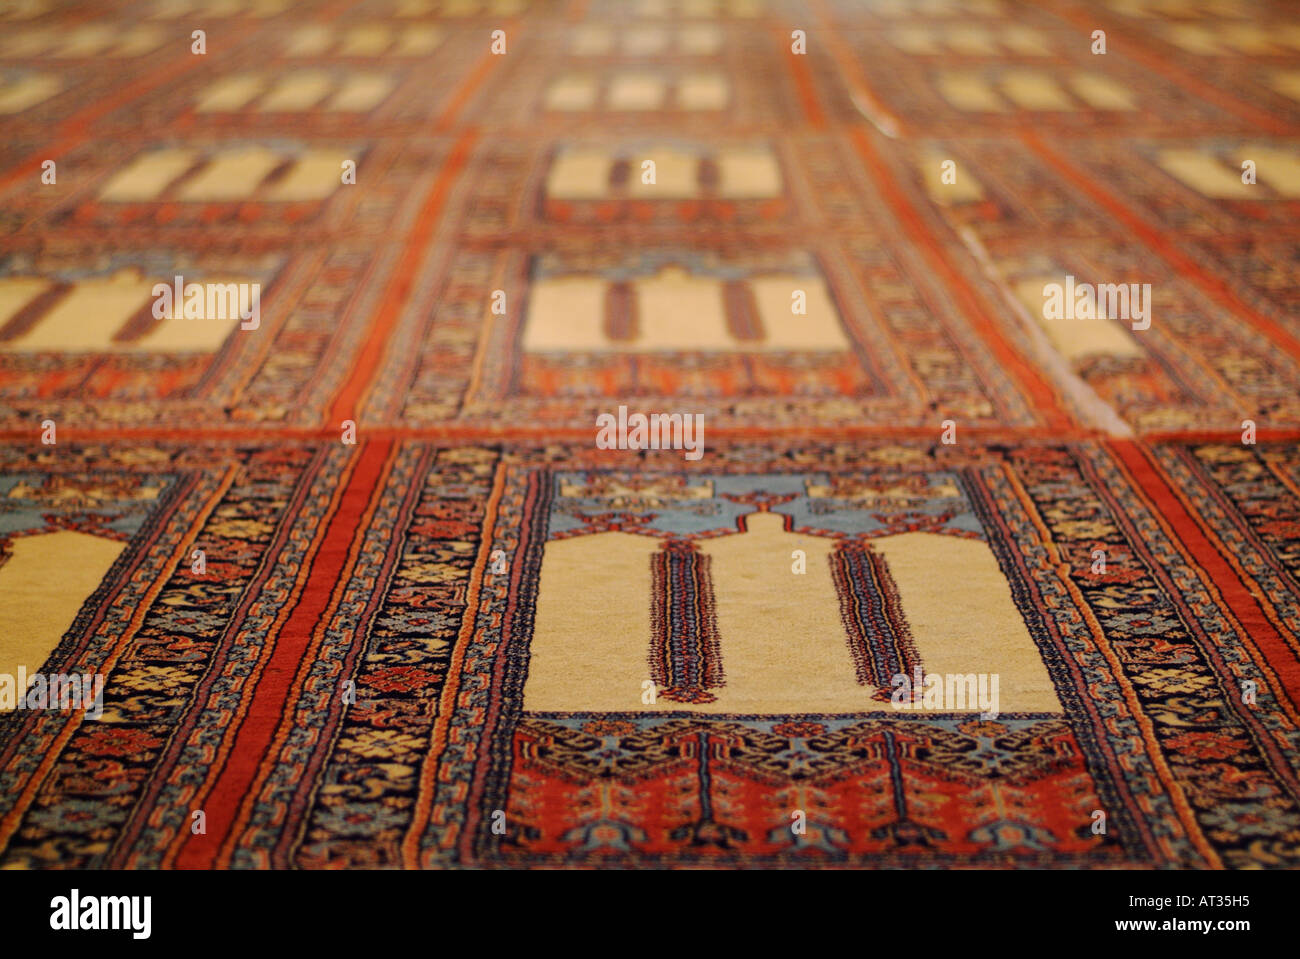 Teppich in der blauen Moschee in Istanbul, Türkei Stockfotografie - Alamy